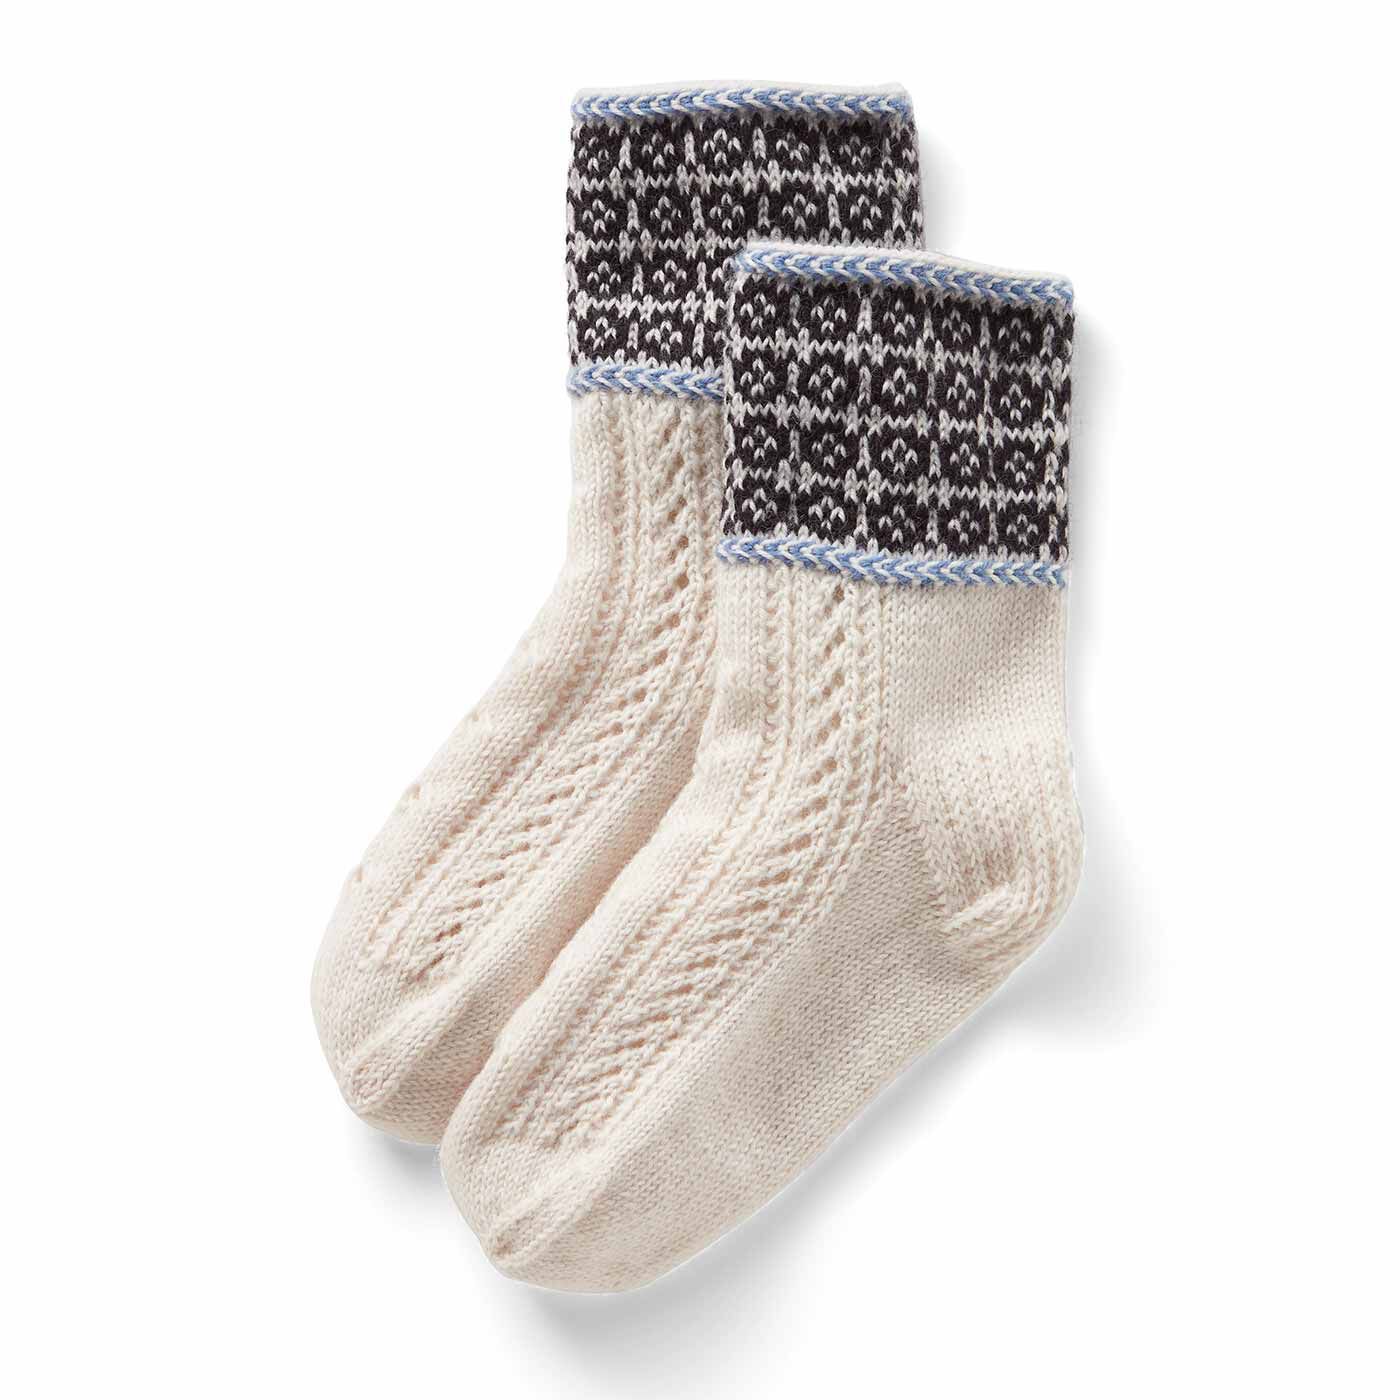 クチュリエ|おうち時間もお出かけも 手編みの相棒 編み込み靴下の会|雪原の道しるべ